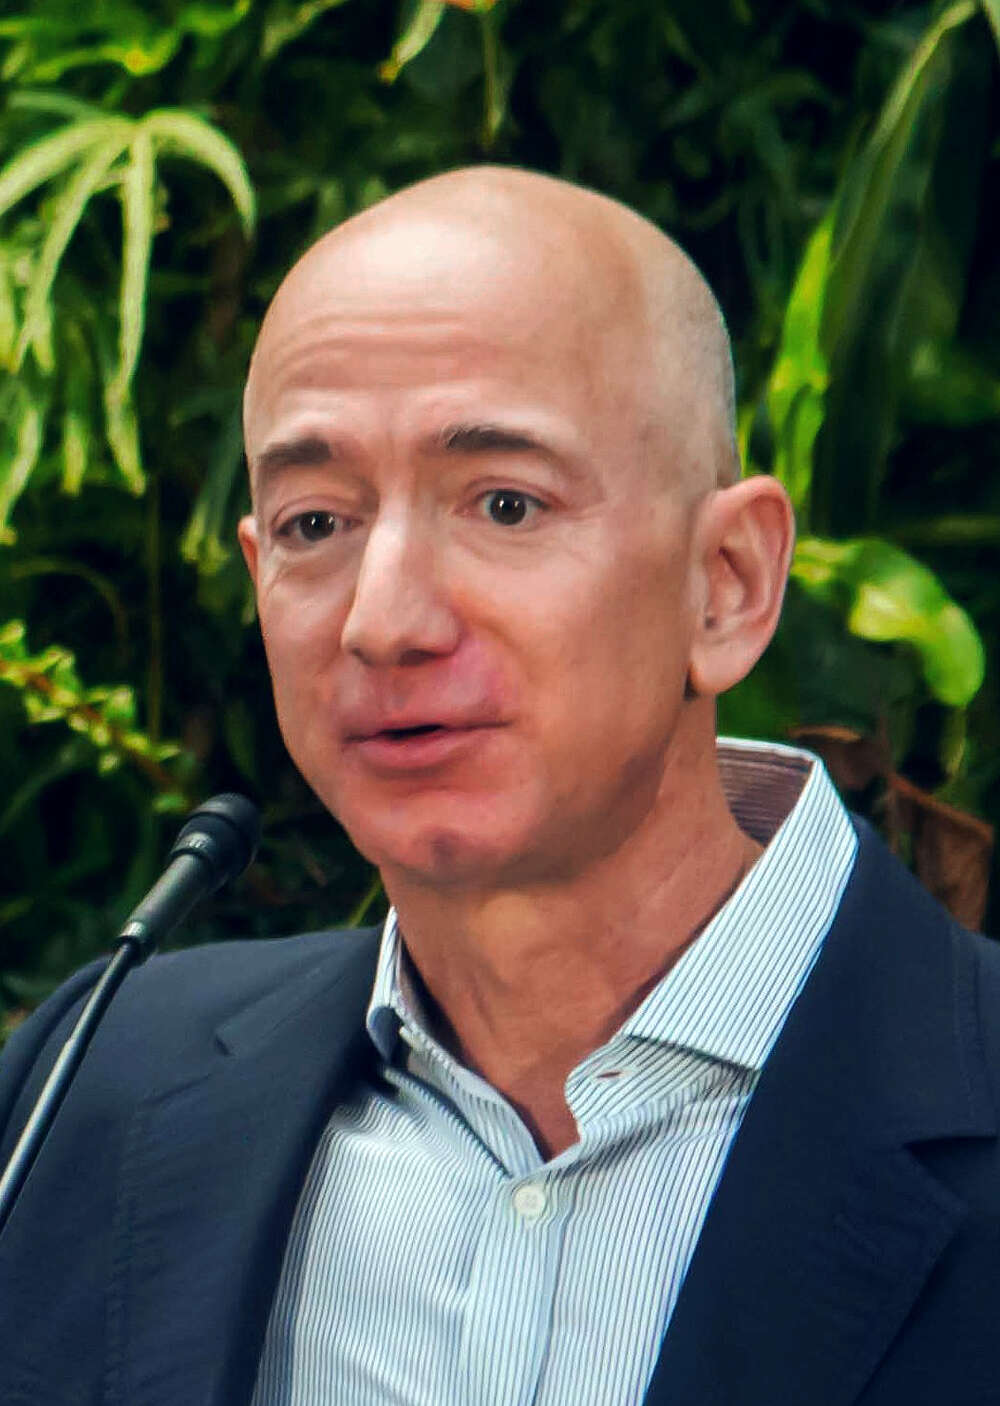 Jeff Bezos ensimmäinen ihminen, jolla on yli 200 miljardin dollarin omaisuus